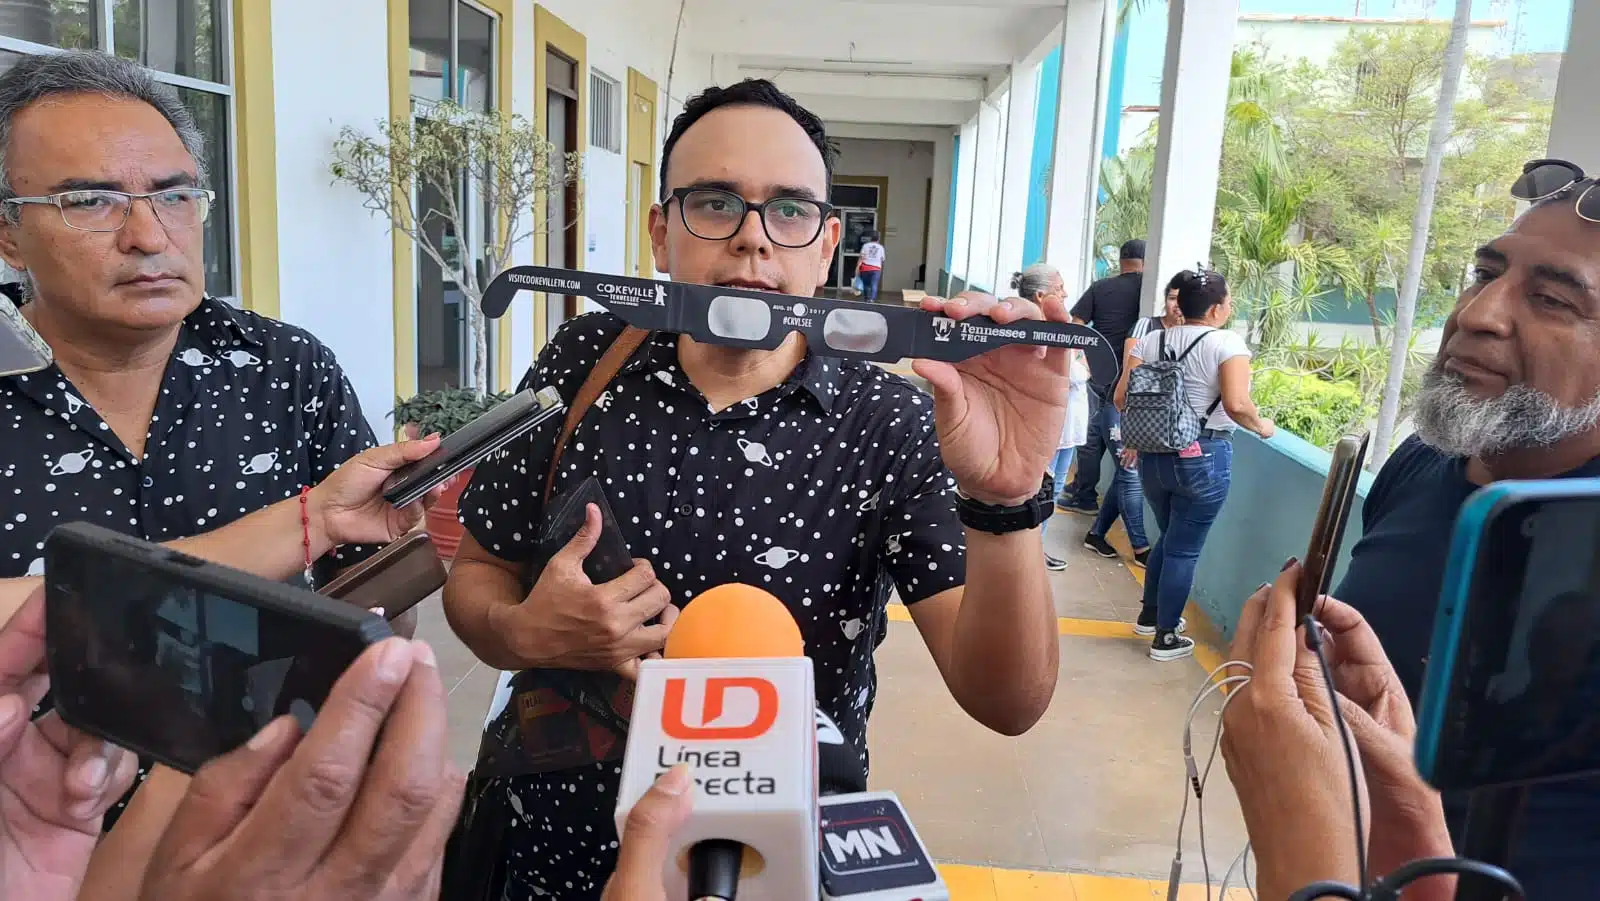 ¿Estás listo para el eclipse? Sociedad Astronómica de Mazatlán organiza actividad para disfrutarlo 